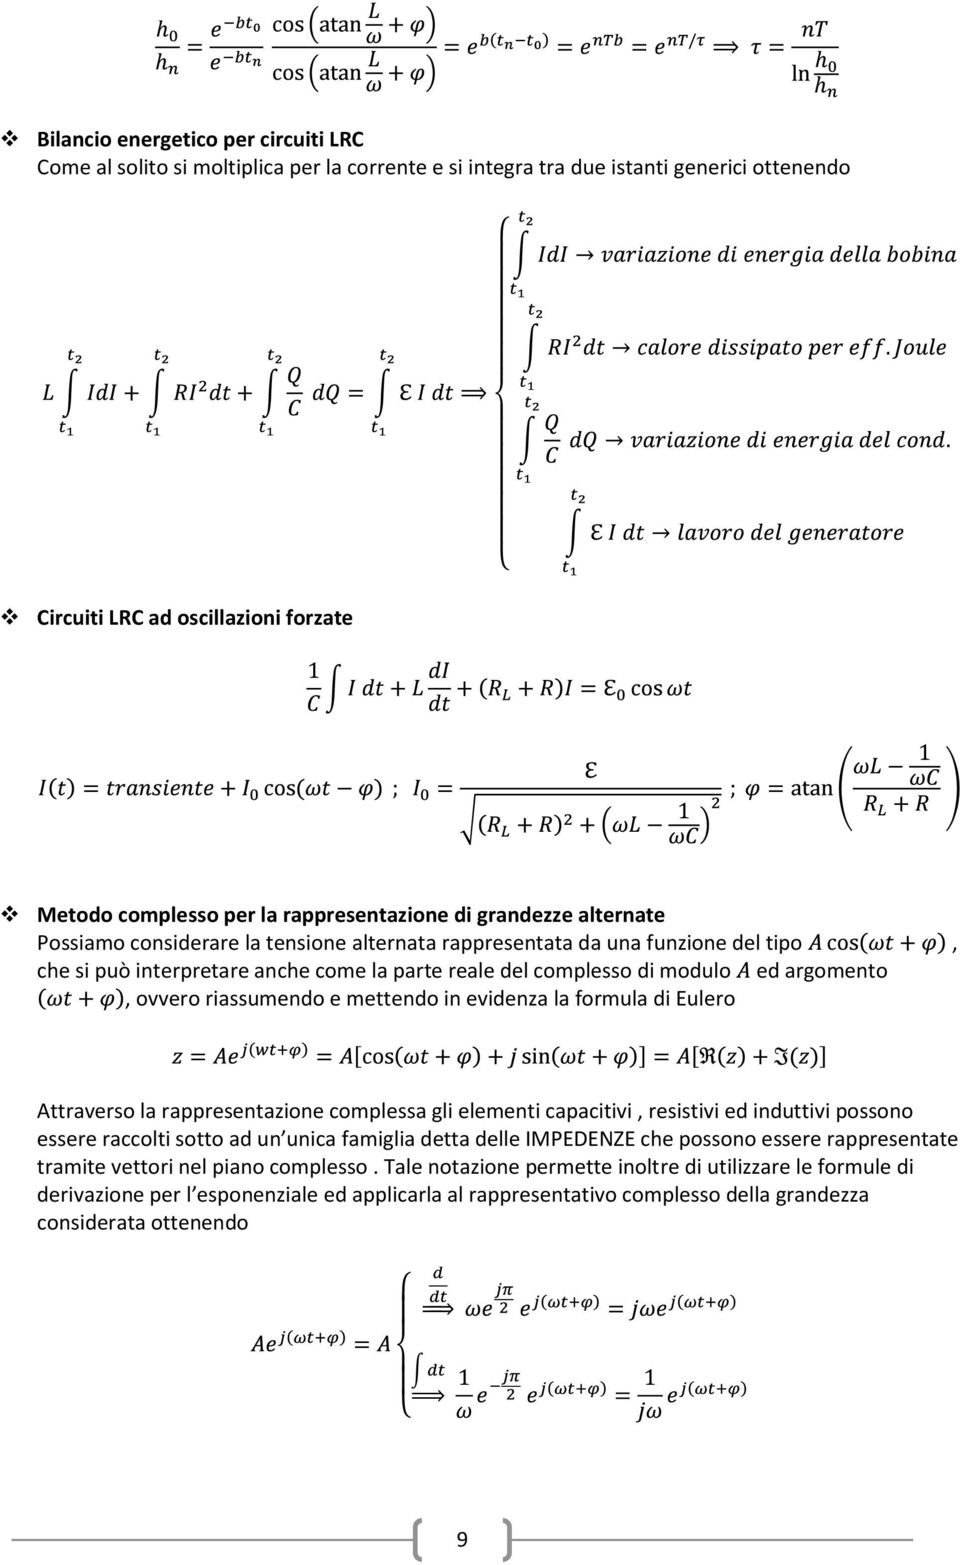 argomento, ovvero riassumendo e mettendo in evidenza la formula di Eulero Attraverso la rappresentazione complessa gli elementi capacitivi, resistivi ed induttivi possono essere raccolti sotto ad un